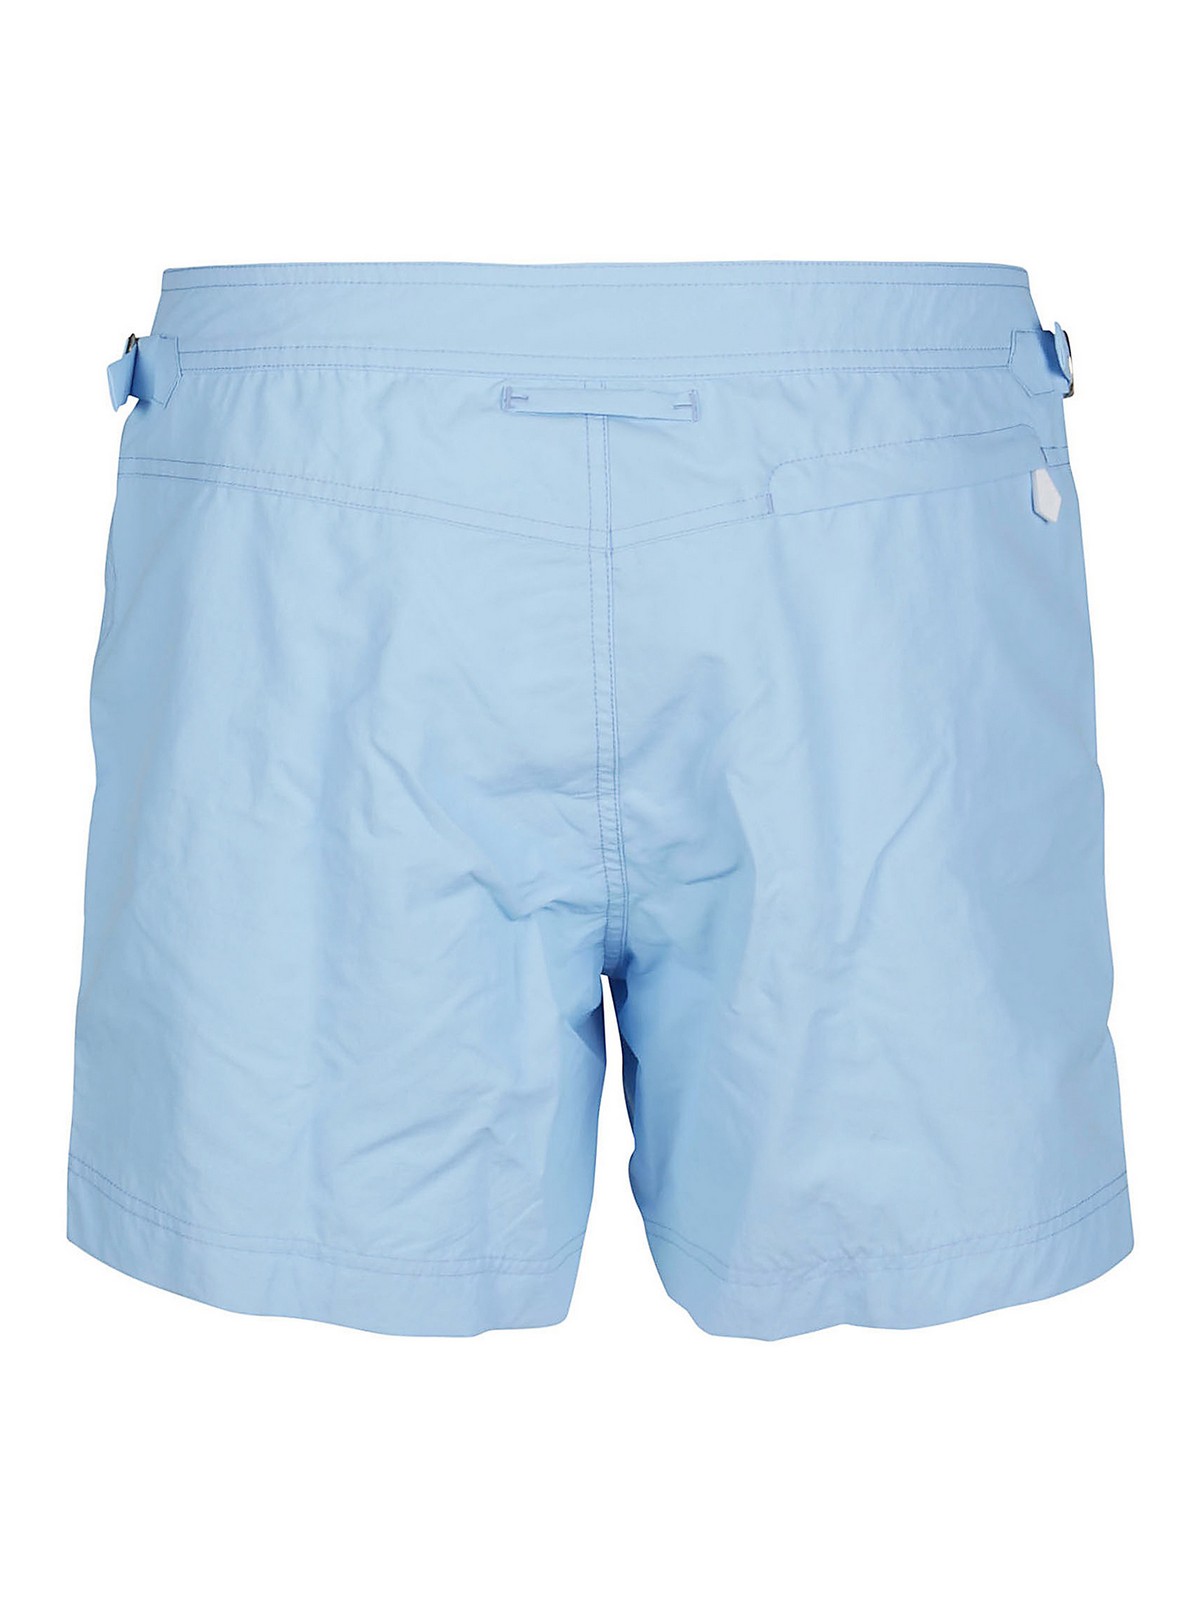 Swim shorts & swimming trunks Tom Ford - Plain coloured swim trunks ...